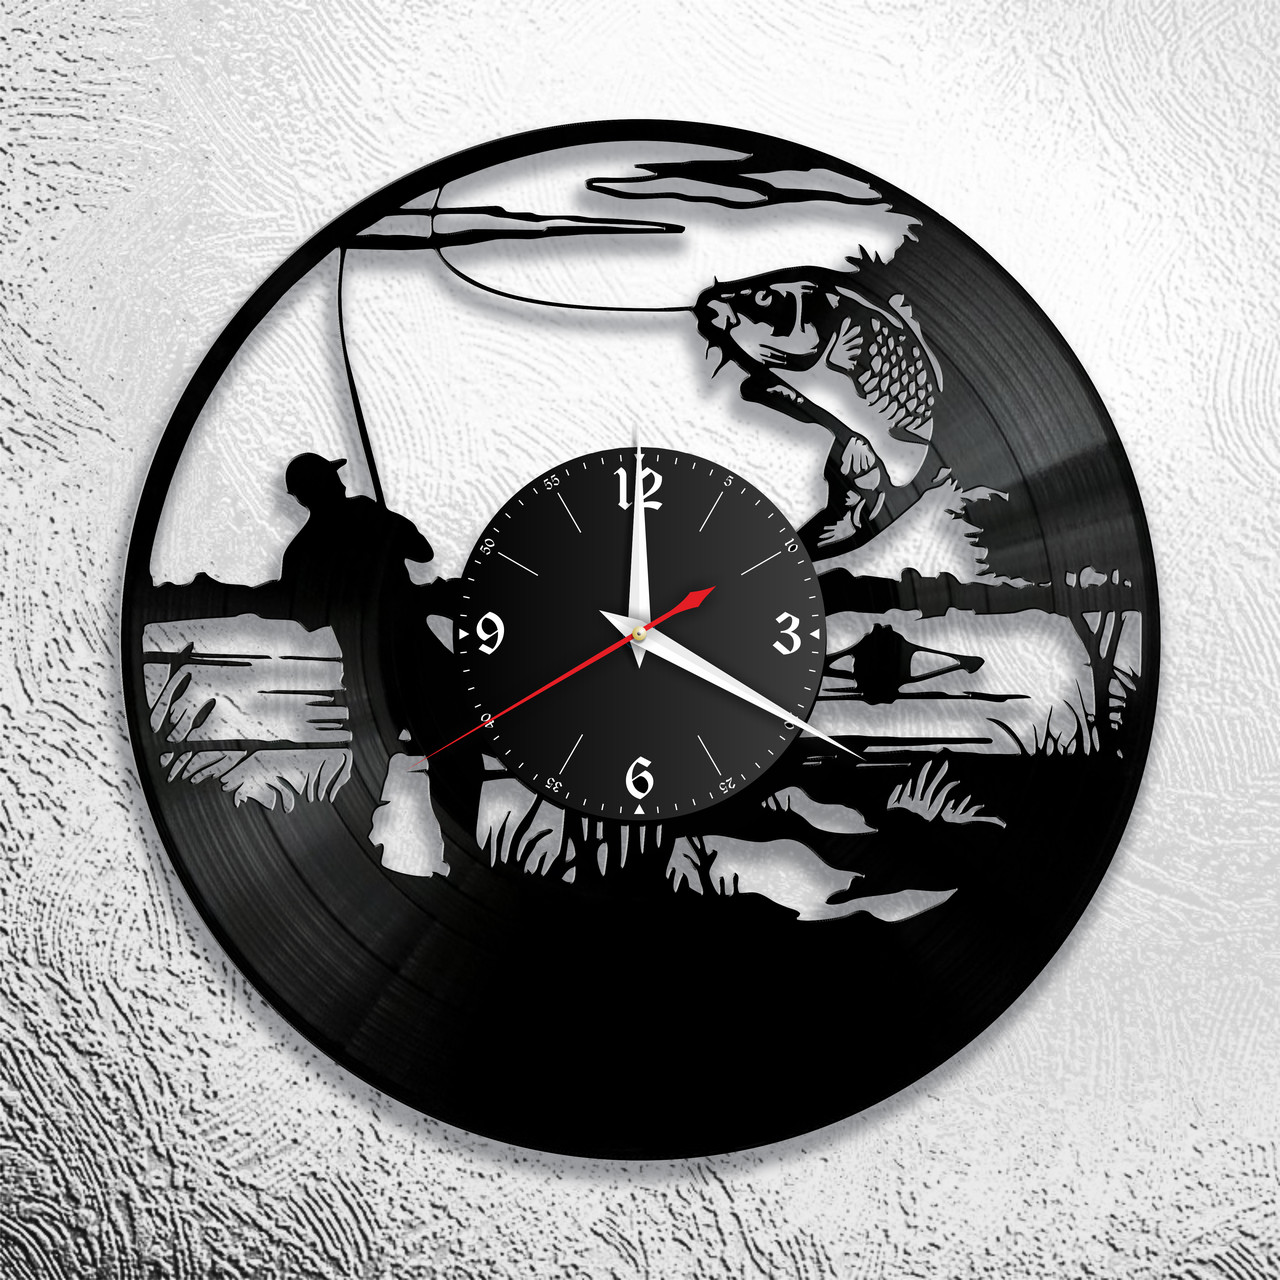 Оригинальные часы из виниловых пластинок "Рыбалка" версия 7, фото 1